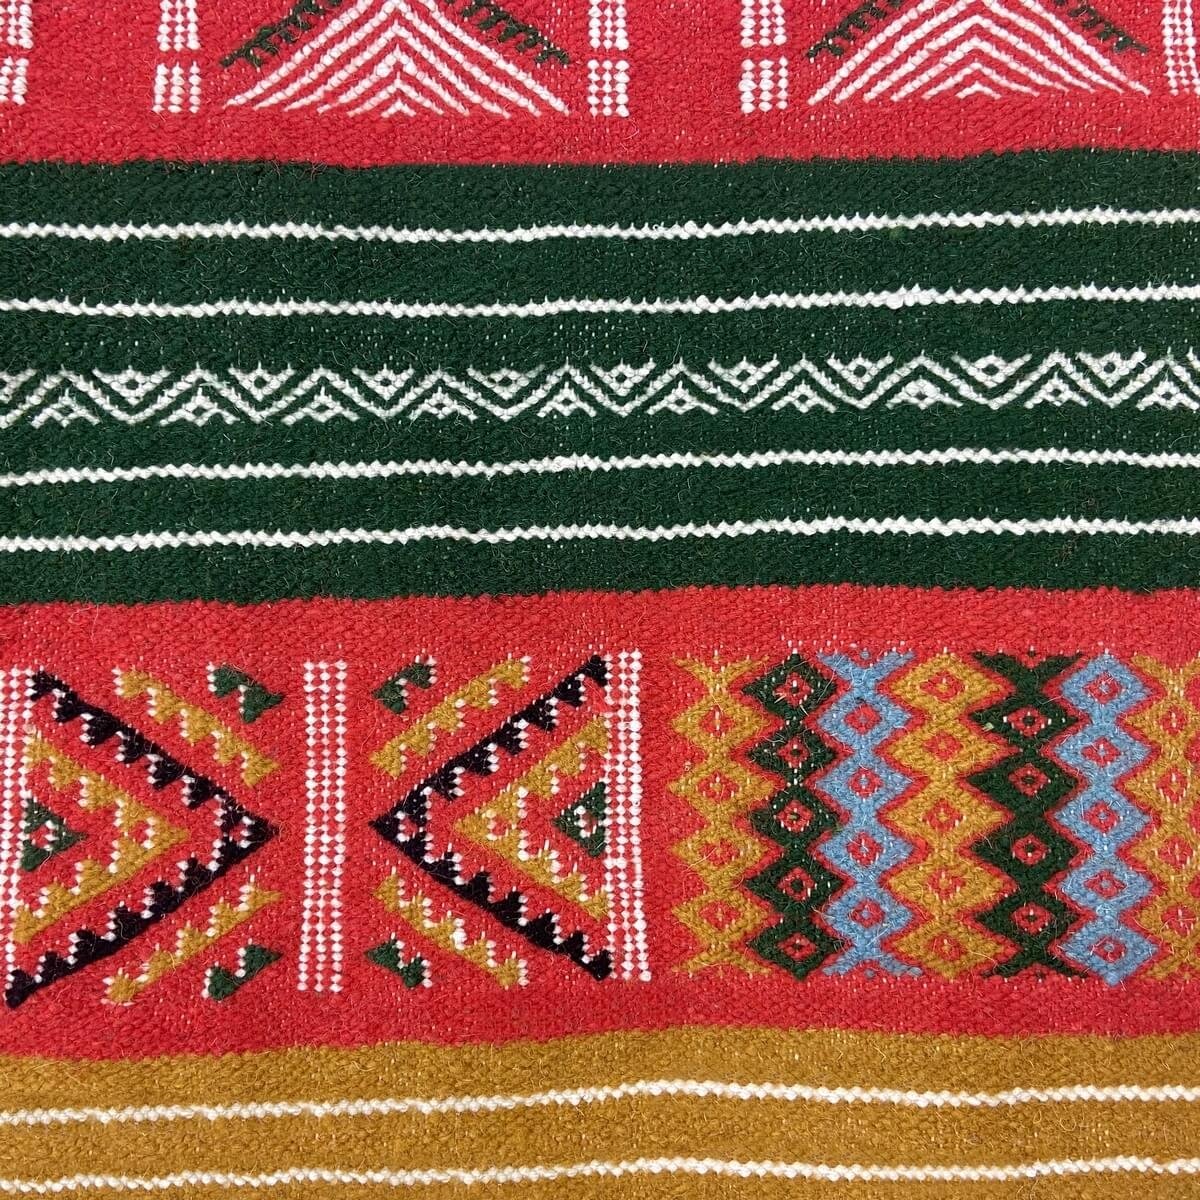 Tapete berbere Tapete Kilim Dalina 100x150 Multicor (Tecidos à mão, Lã) Tapete tunisiano kilim, estilo marroquino. Tapete retang